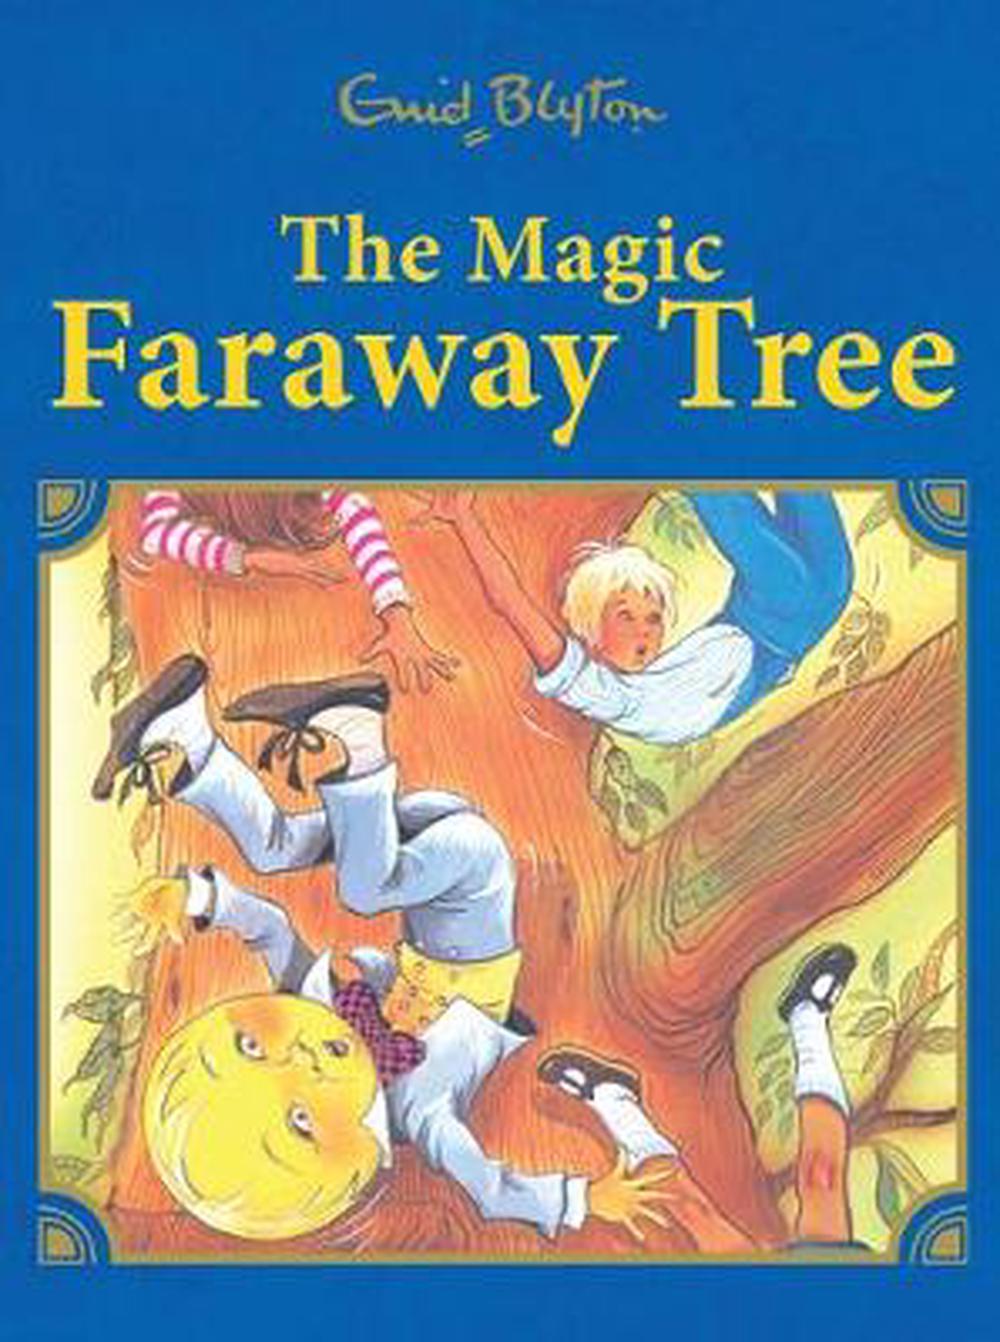 the far away tree book